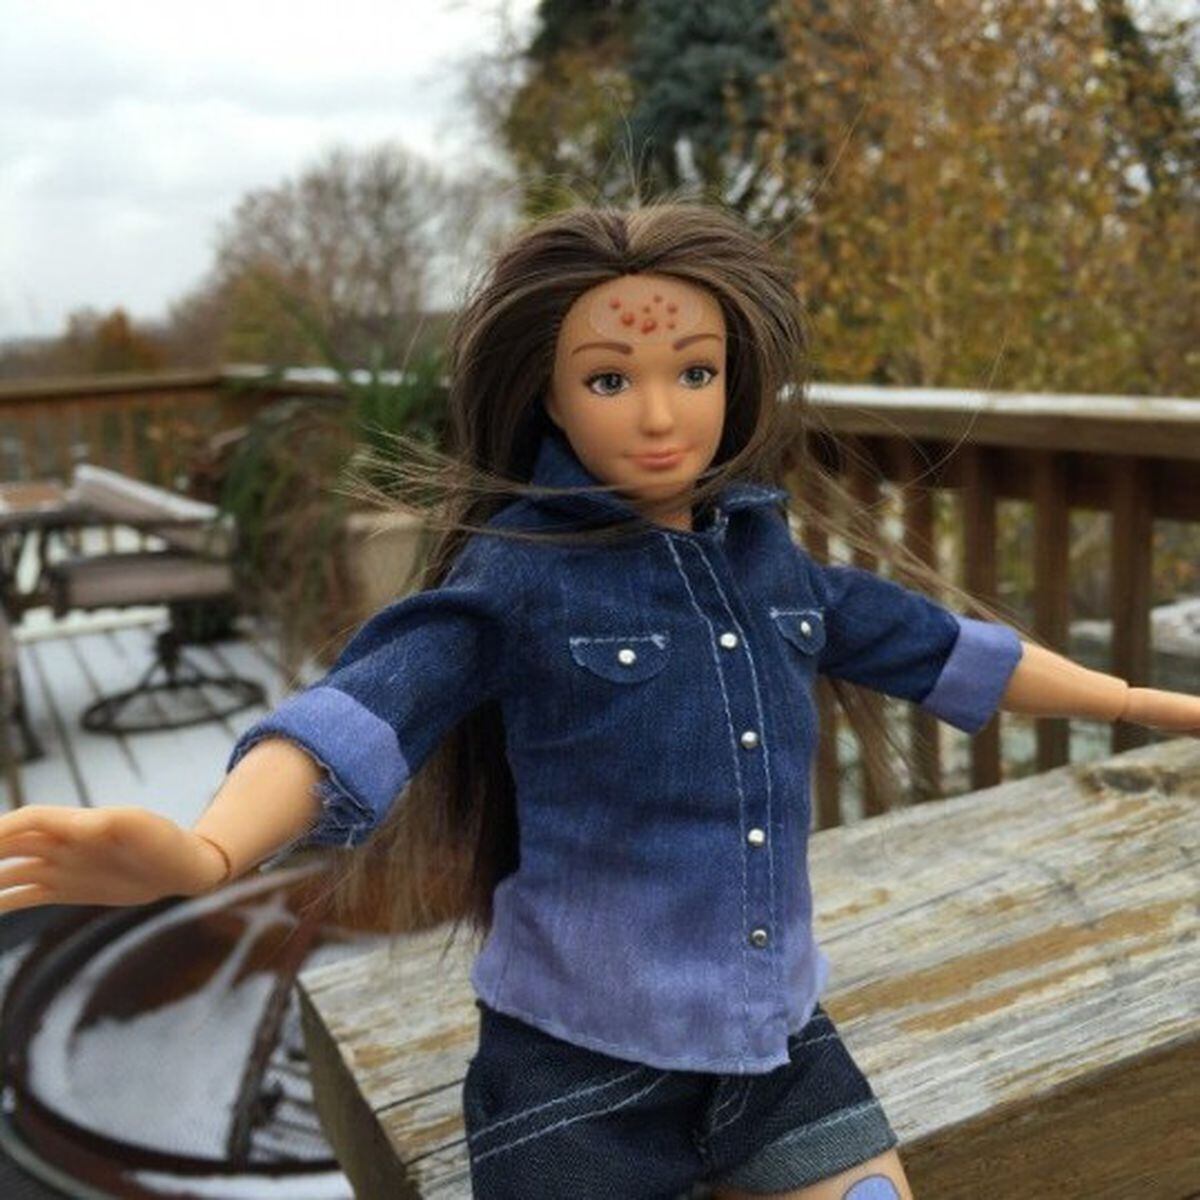 Barbie real: Americano cria boneca com proporções mais humanas